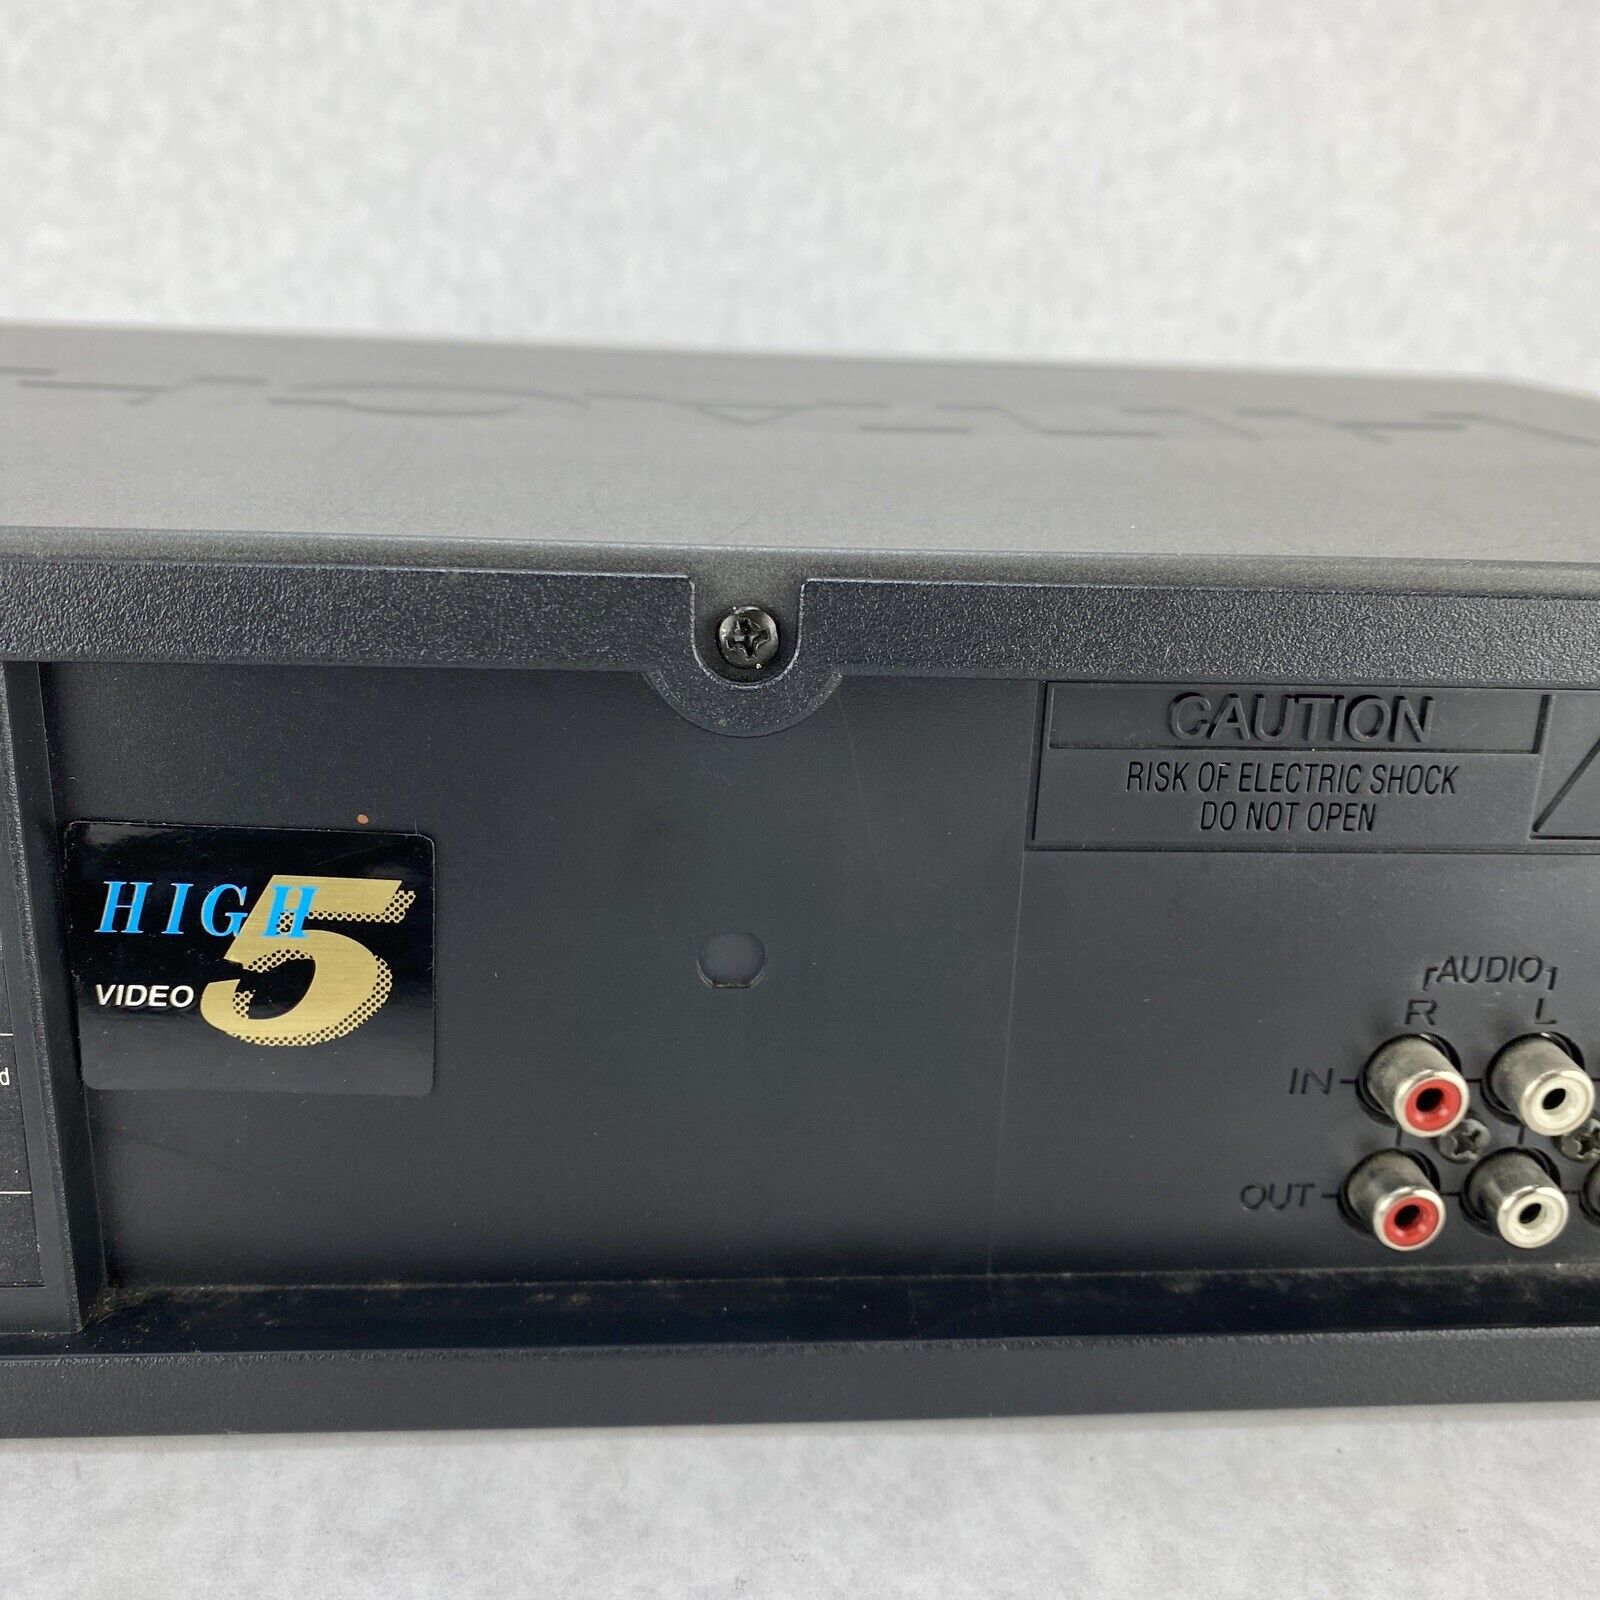 Hitachi VT-FX624A VHS Video Tape Cassette Player VCR Plus NO REMOTE